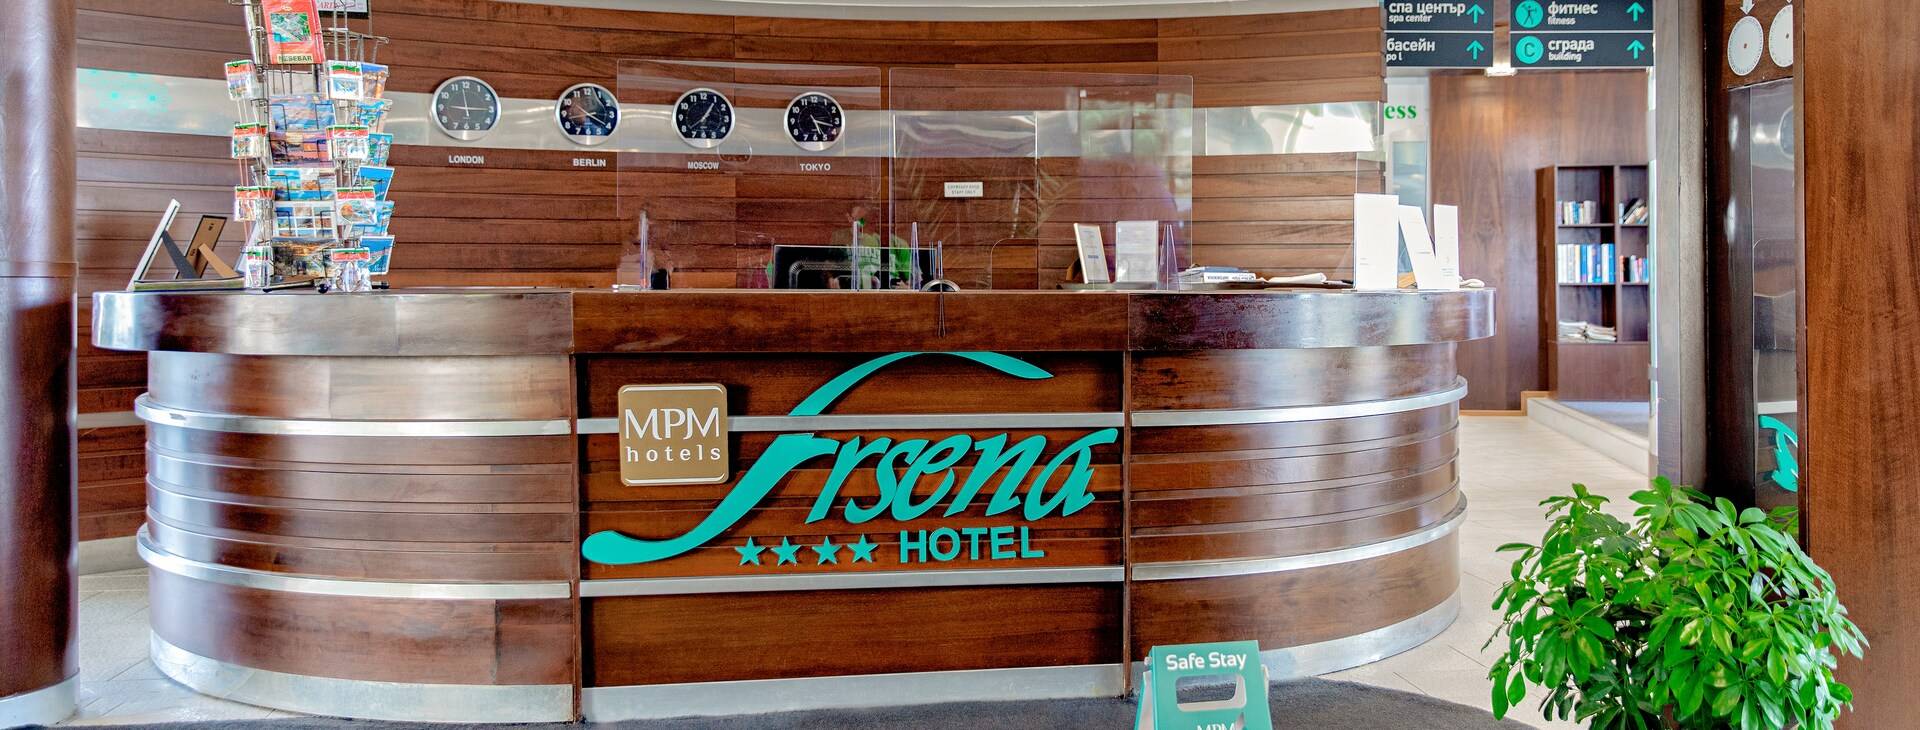 Hotel MPM Arsena Obrázok19